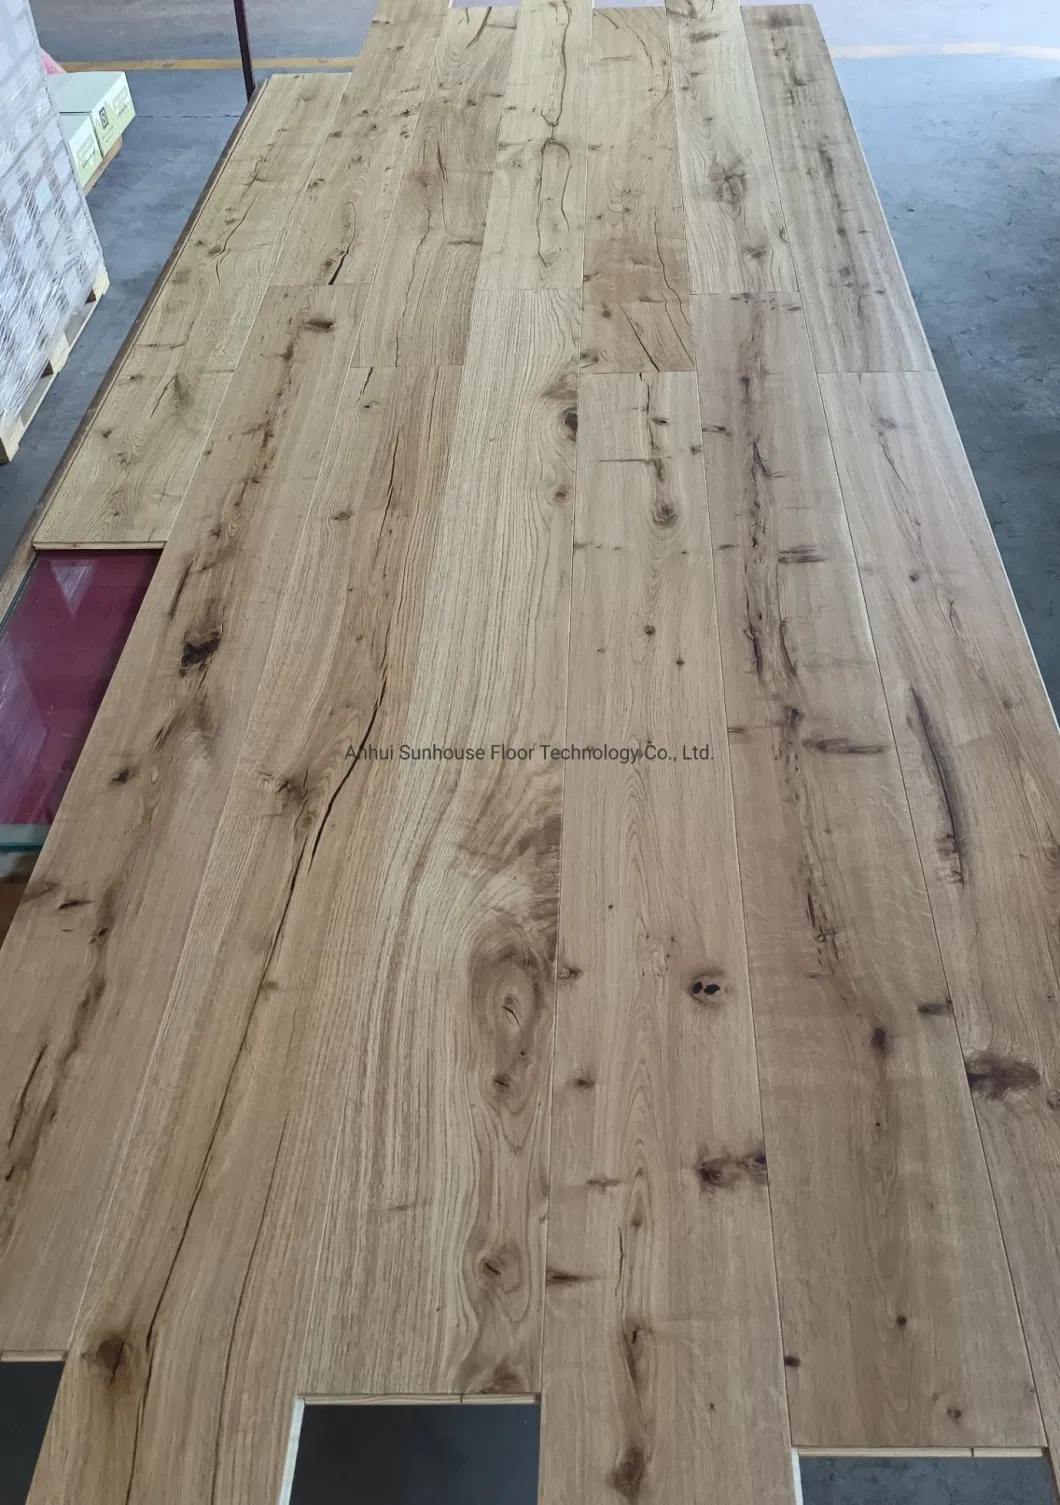 Europe Oak Multiply Engineered Wood Flooring Herringbone/Fishbone/Strips Parquet Wood Floor/Hardwood Flooring